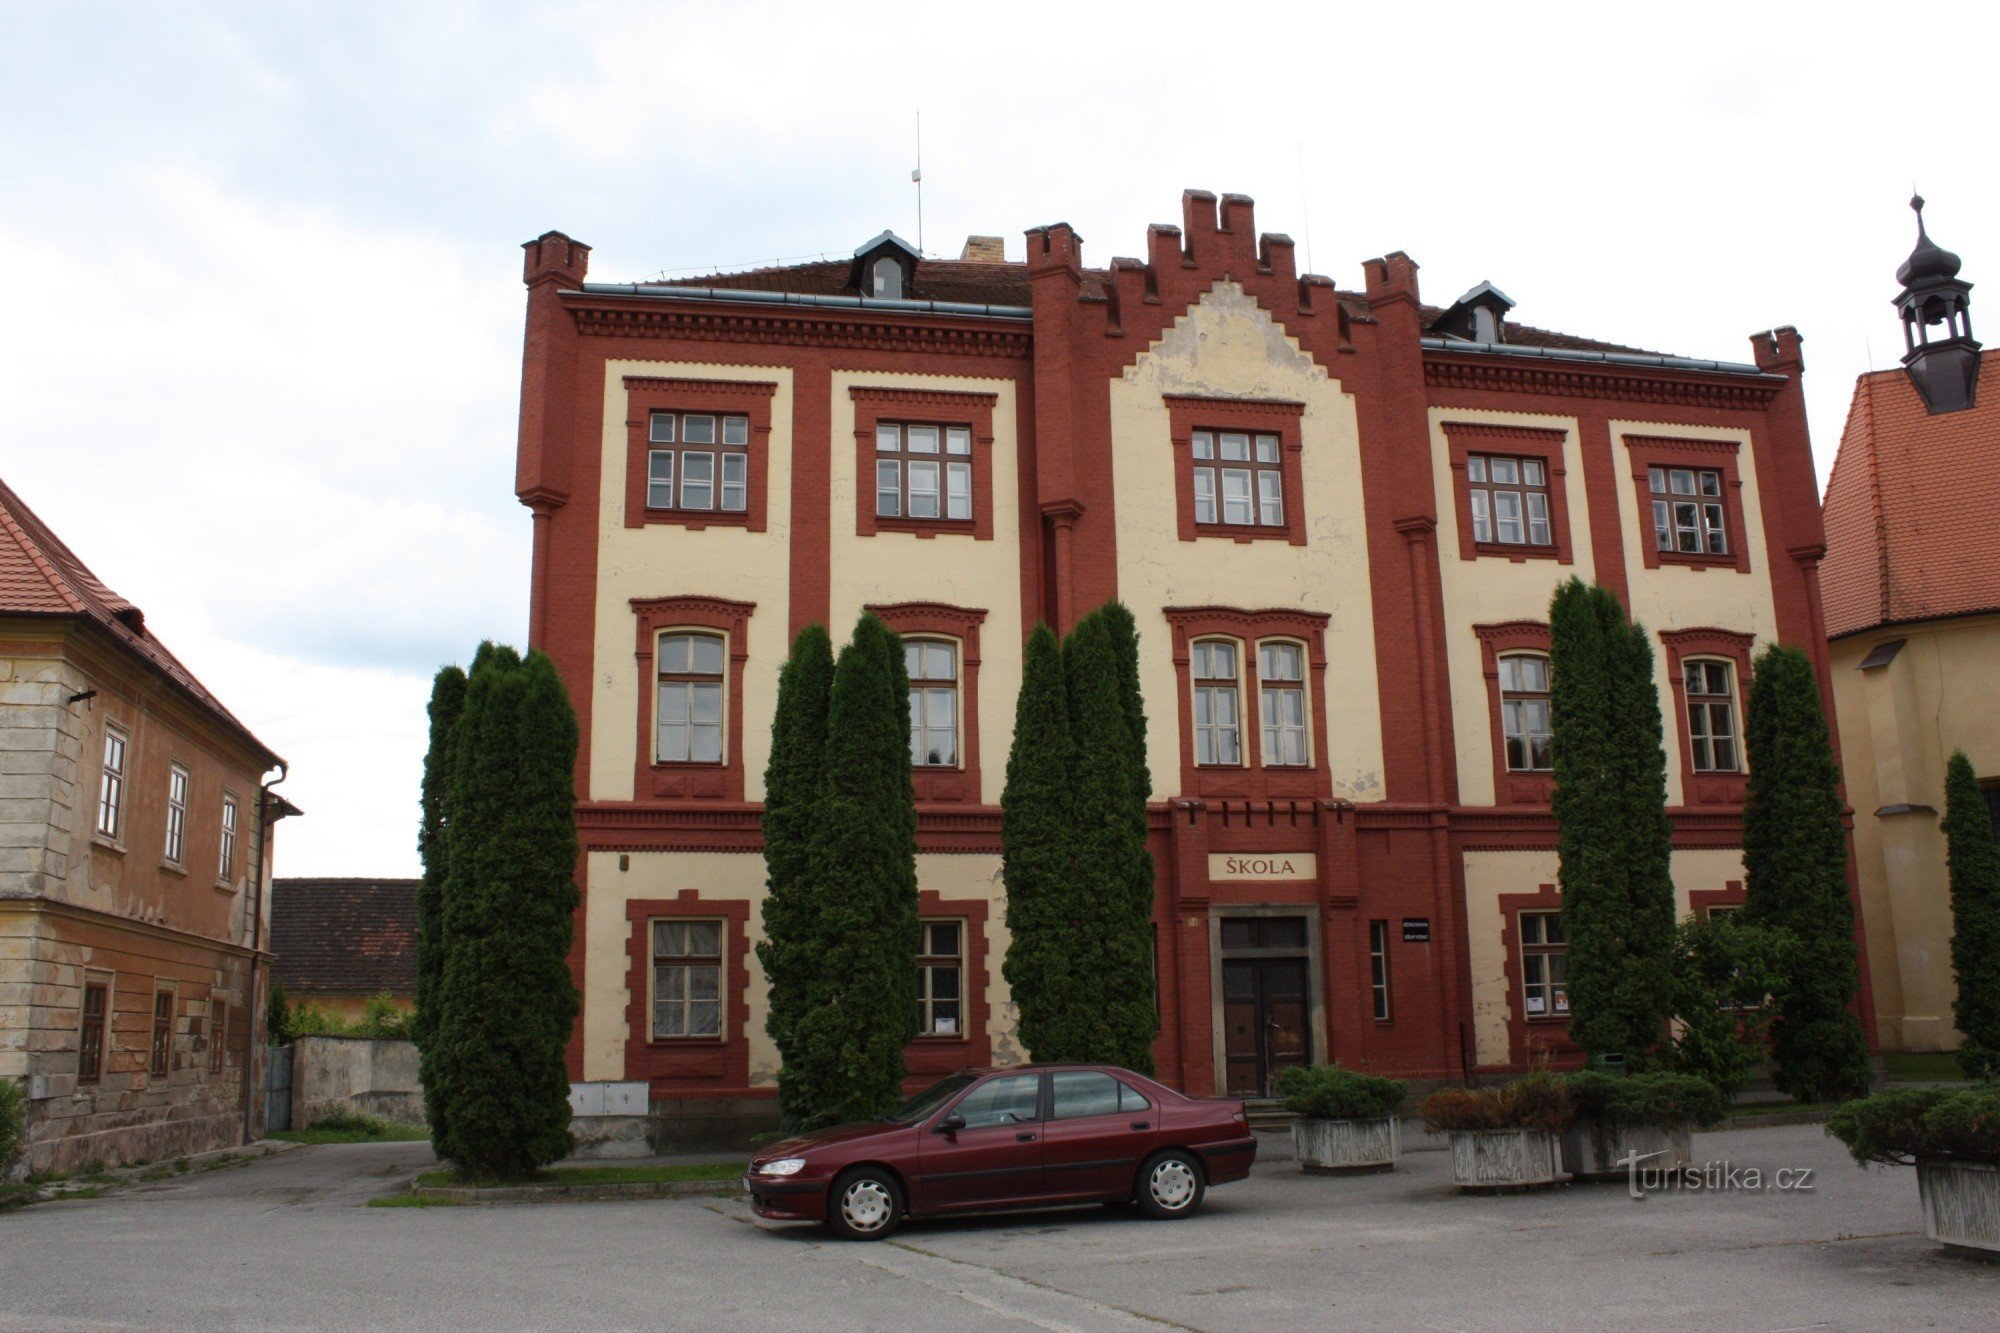 Neogotisch gebouw van de oude school in Netolice in de buurt van de kerk van St. Wenceslas